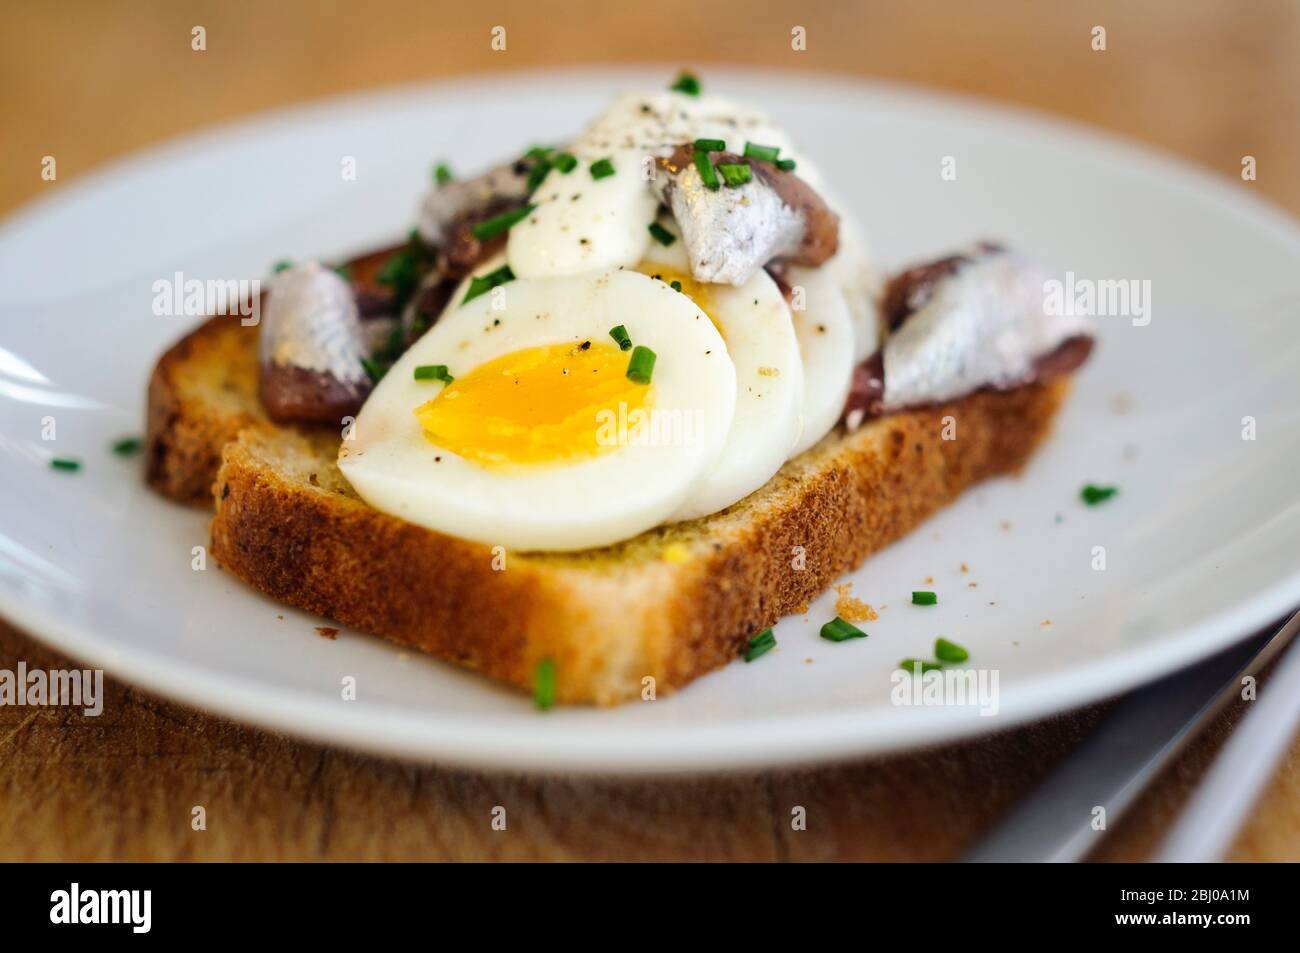 Ein schwedisches klassisches Sandwich mit offenem Gesicht mit geschnittenem, hartgekochtem Ei, gekrönt mit Schwedischen Ansjovis (eingelegte Sprossen), bestreut mit gehacktem Schnittlauch. Stockfoto